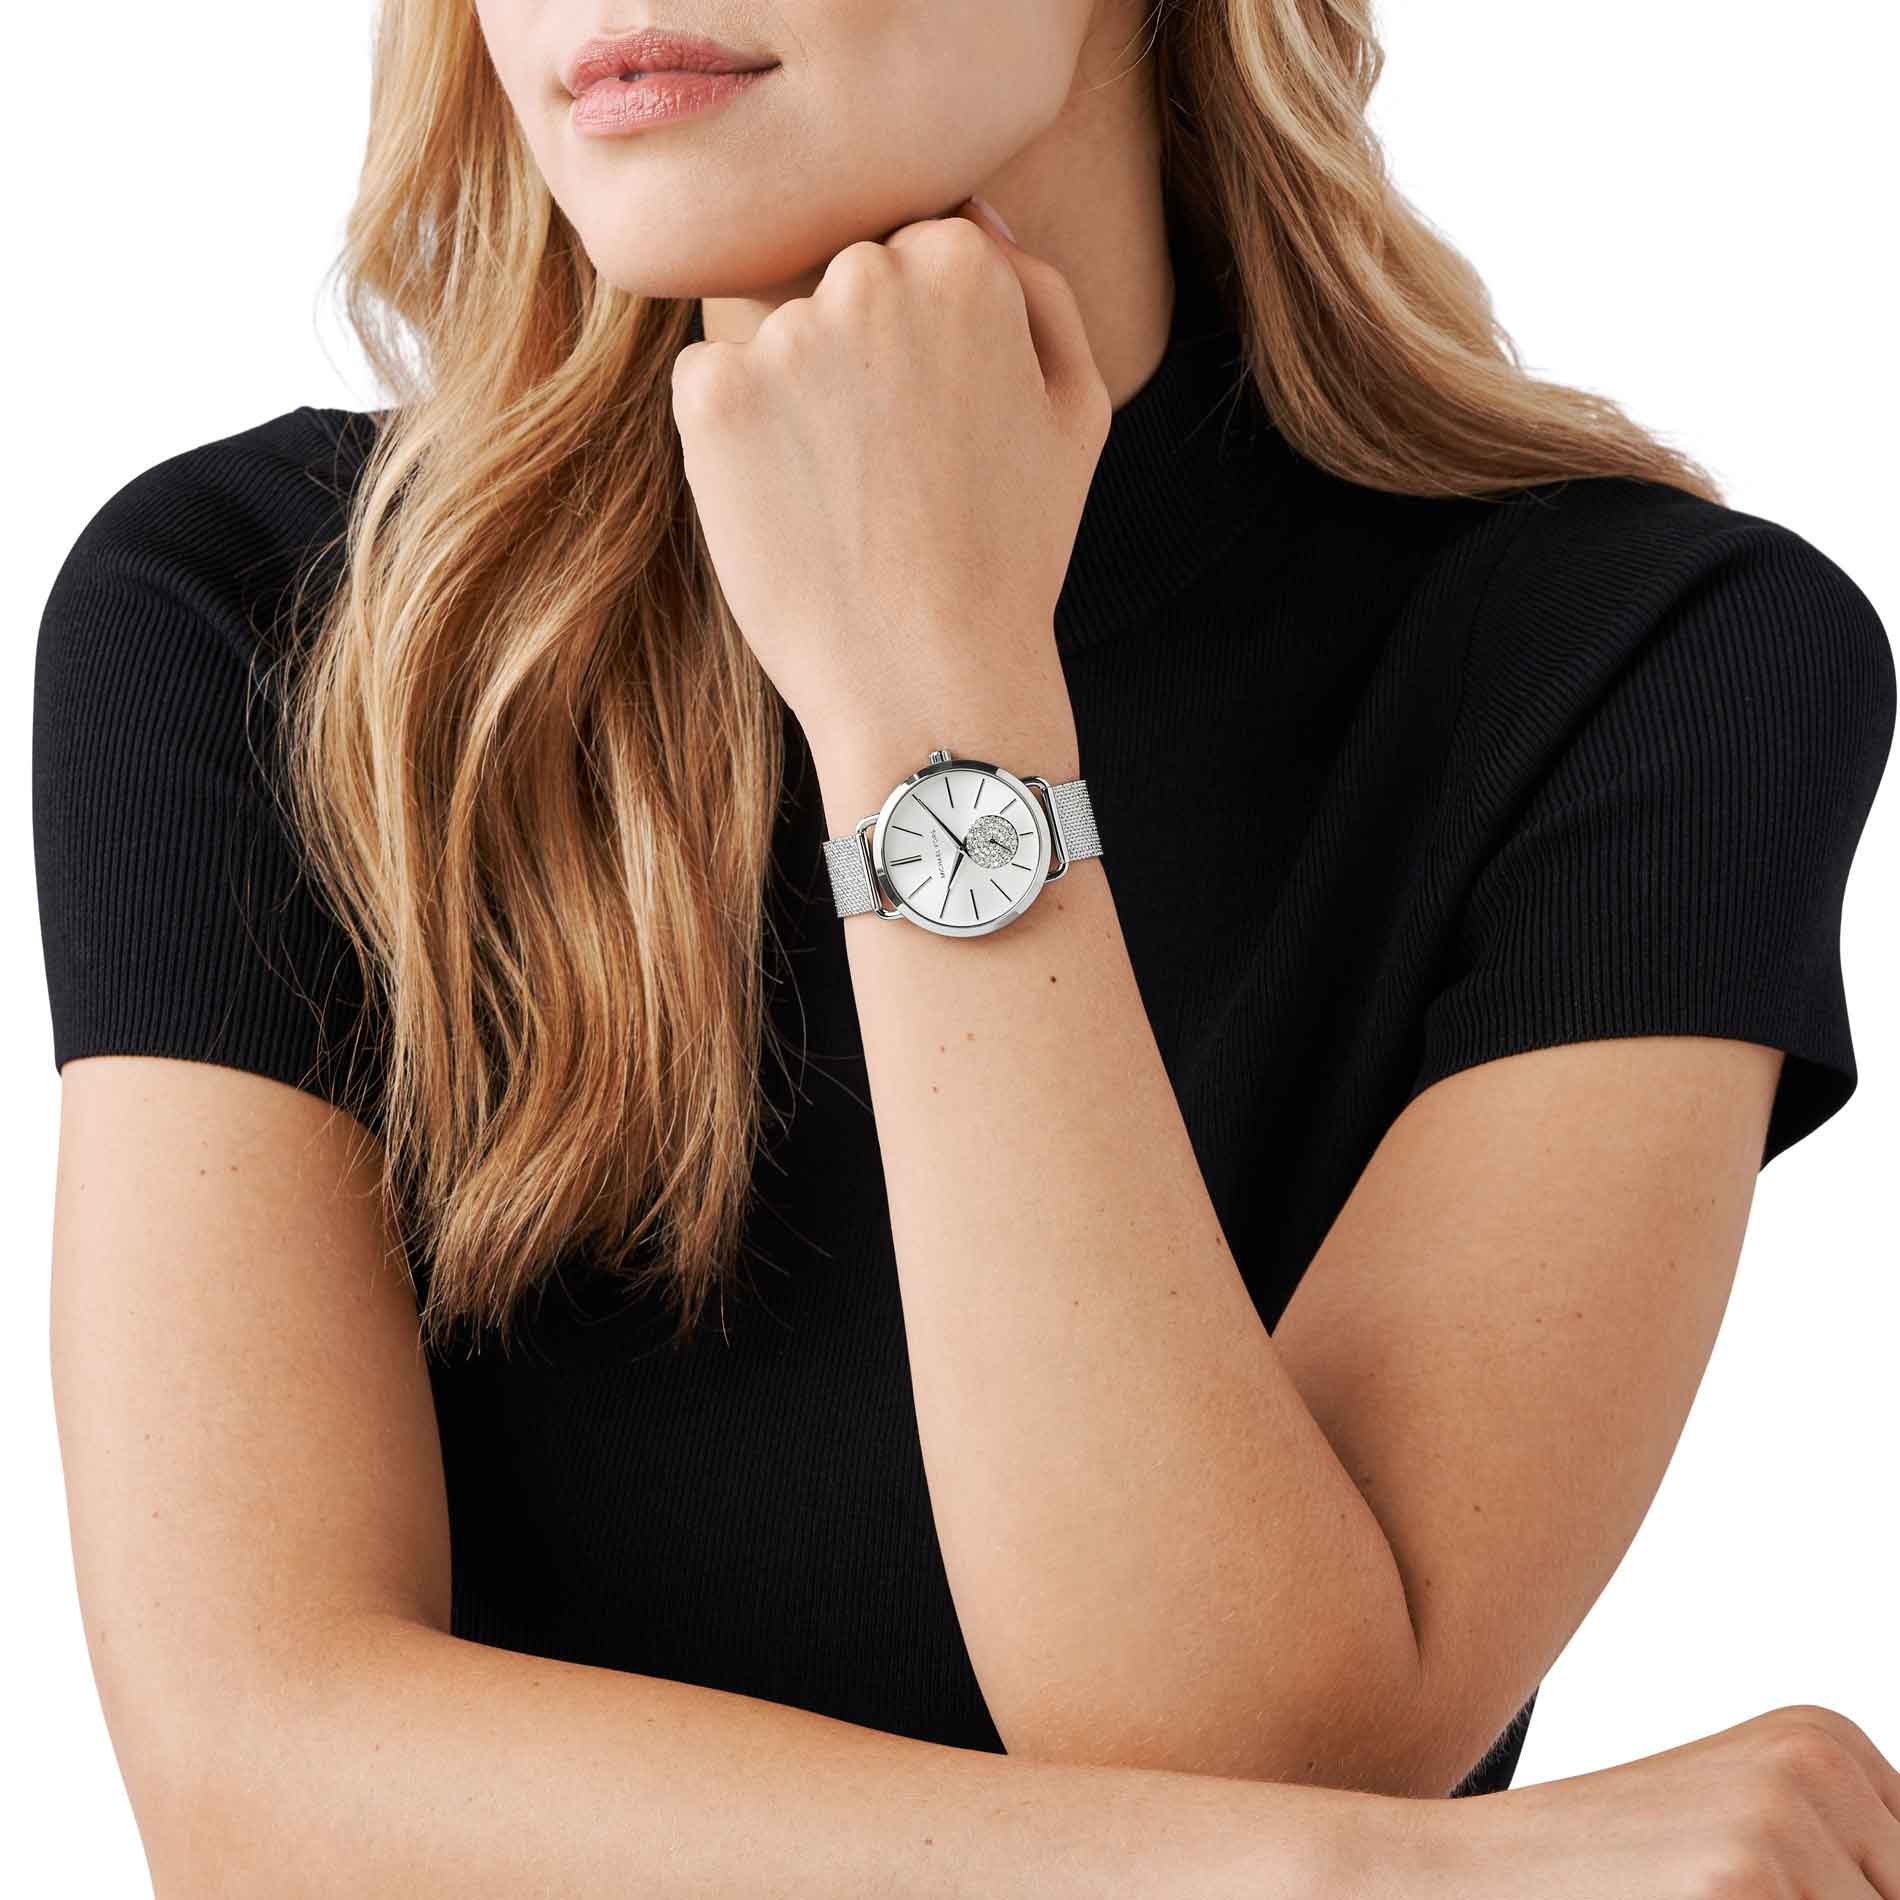 Sølvfarvet Michael Kors Portia MK3843 dameur med hvide sten på chronographen på den grå urskive. Uret har mesh-lænke. Uret ses på håndledet af en kvinde iført en sort T-shirt.